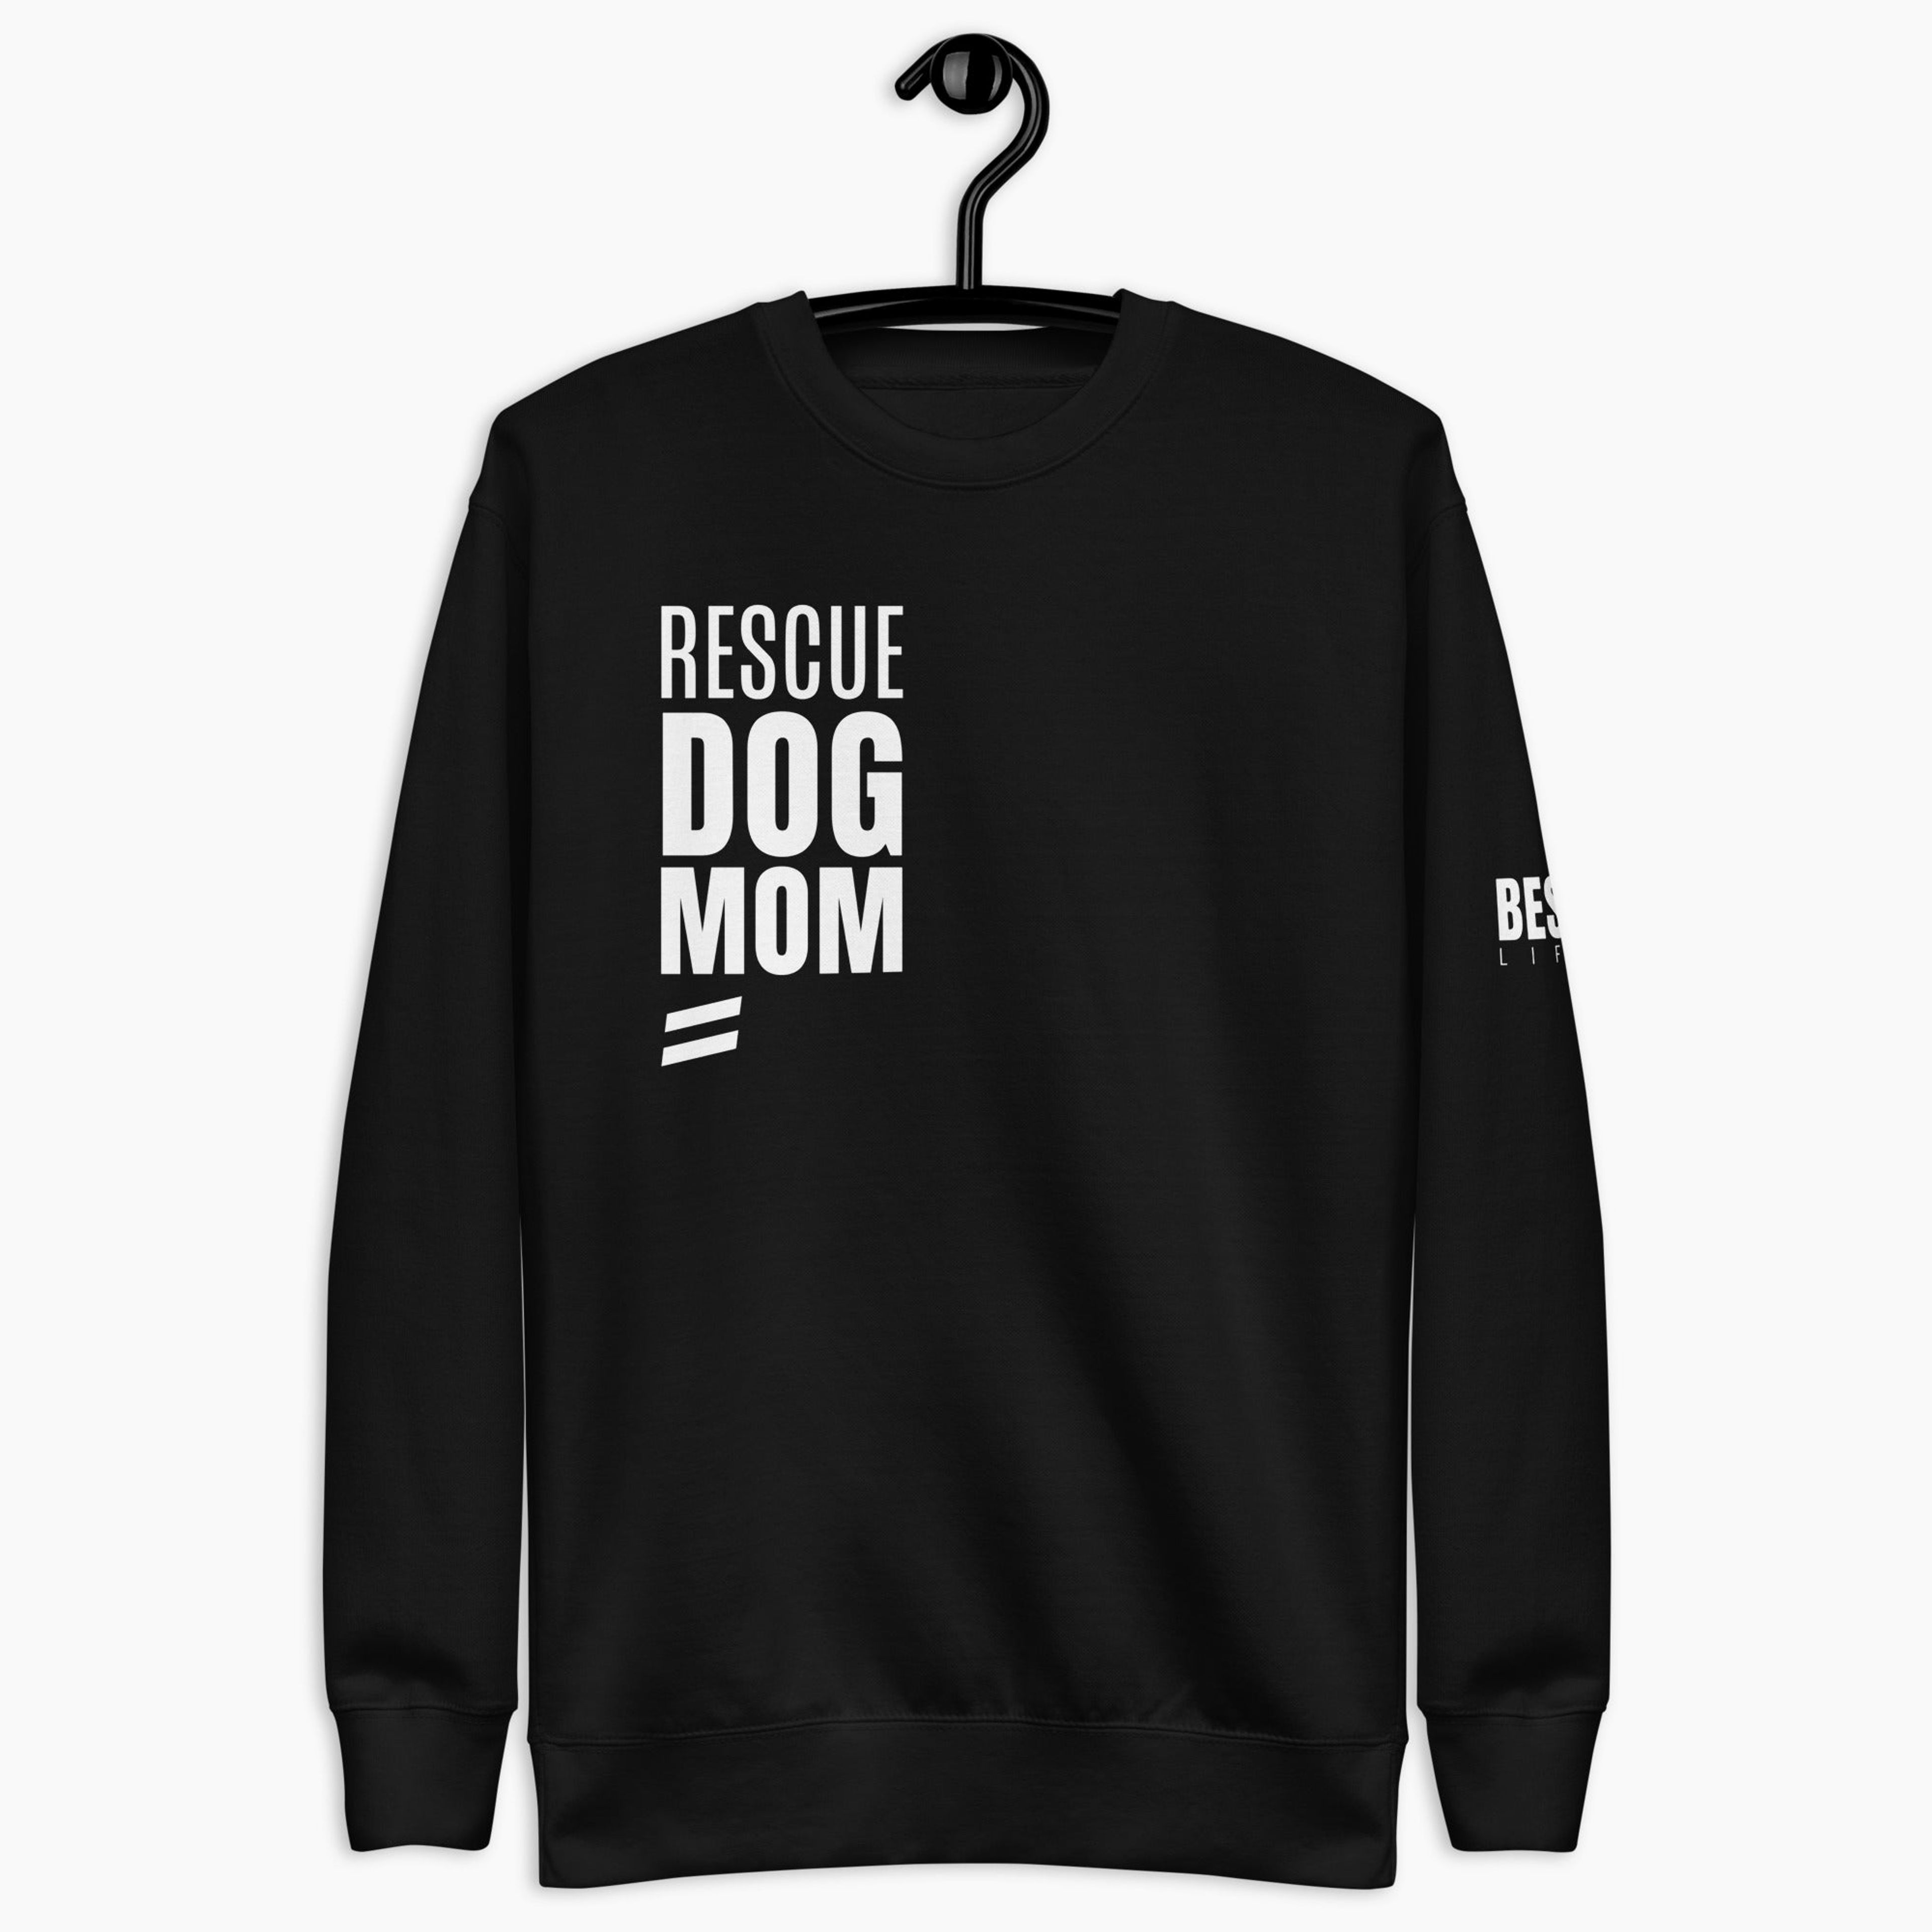 Rescue Dog Mom - Unisex Premium Sweatshirt